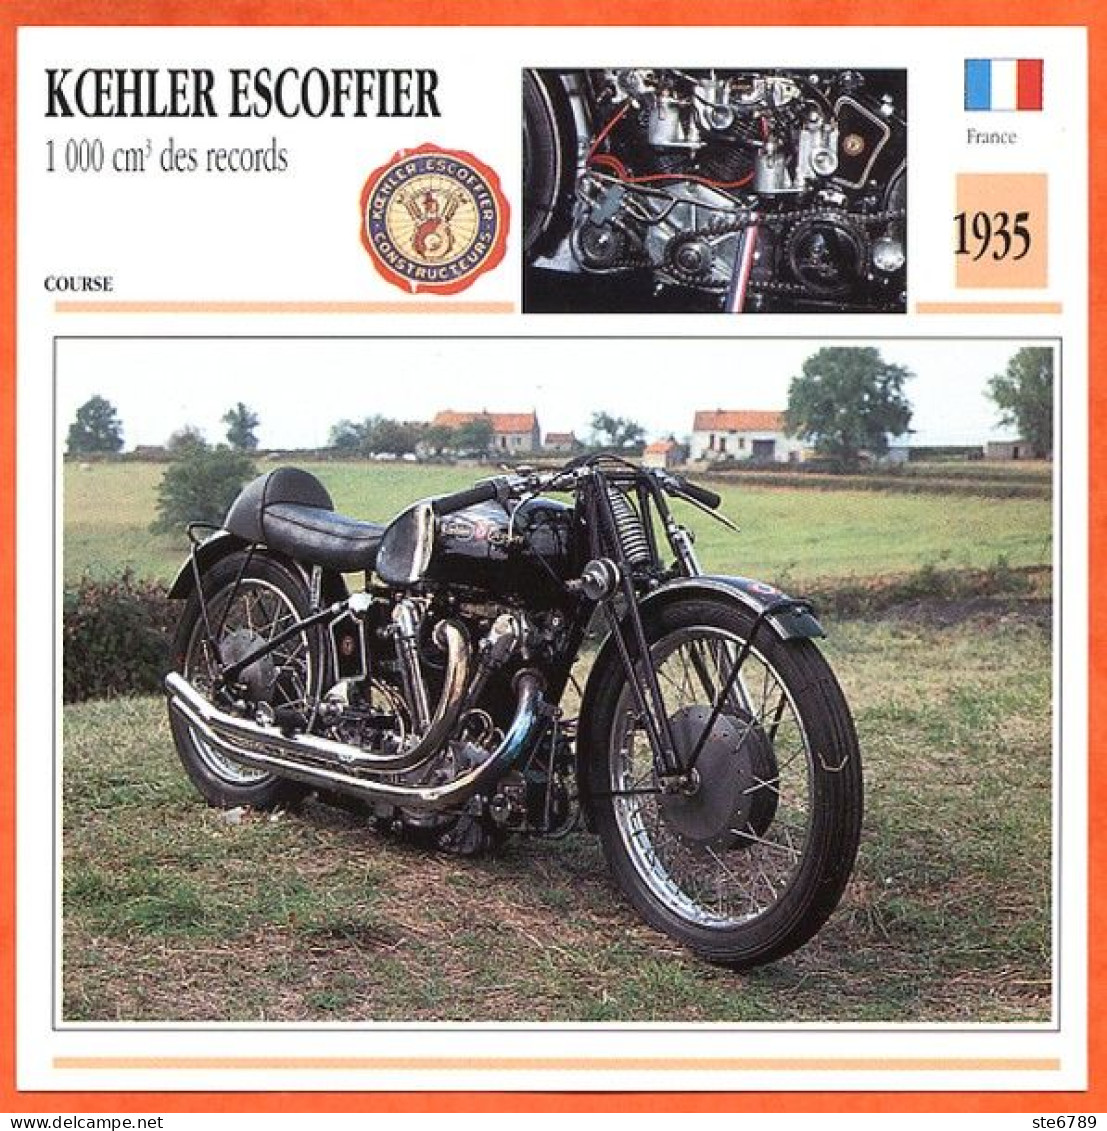 KOEHLER ESCOFFIER 1000 1935 France Fiche Technique Moto - Sport